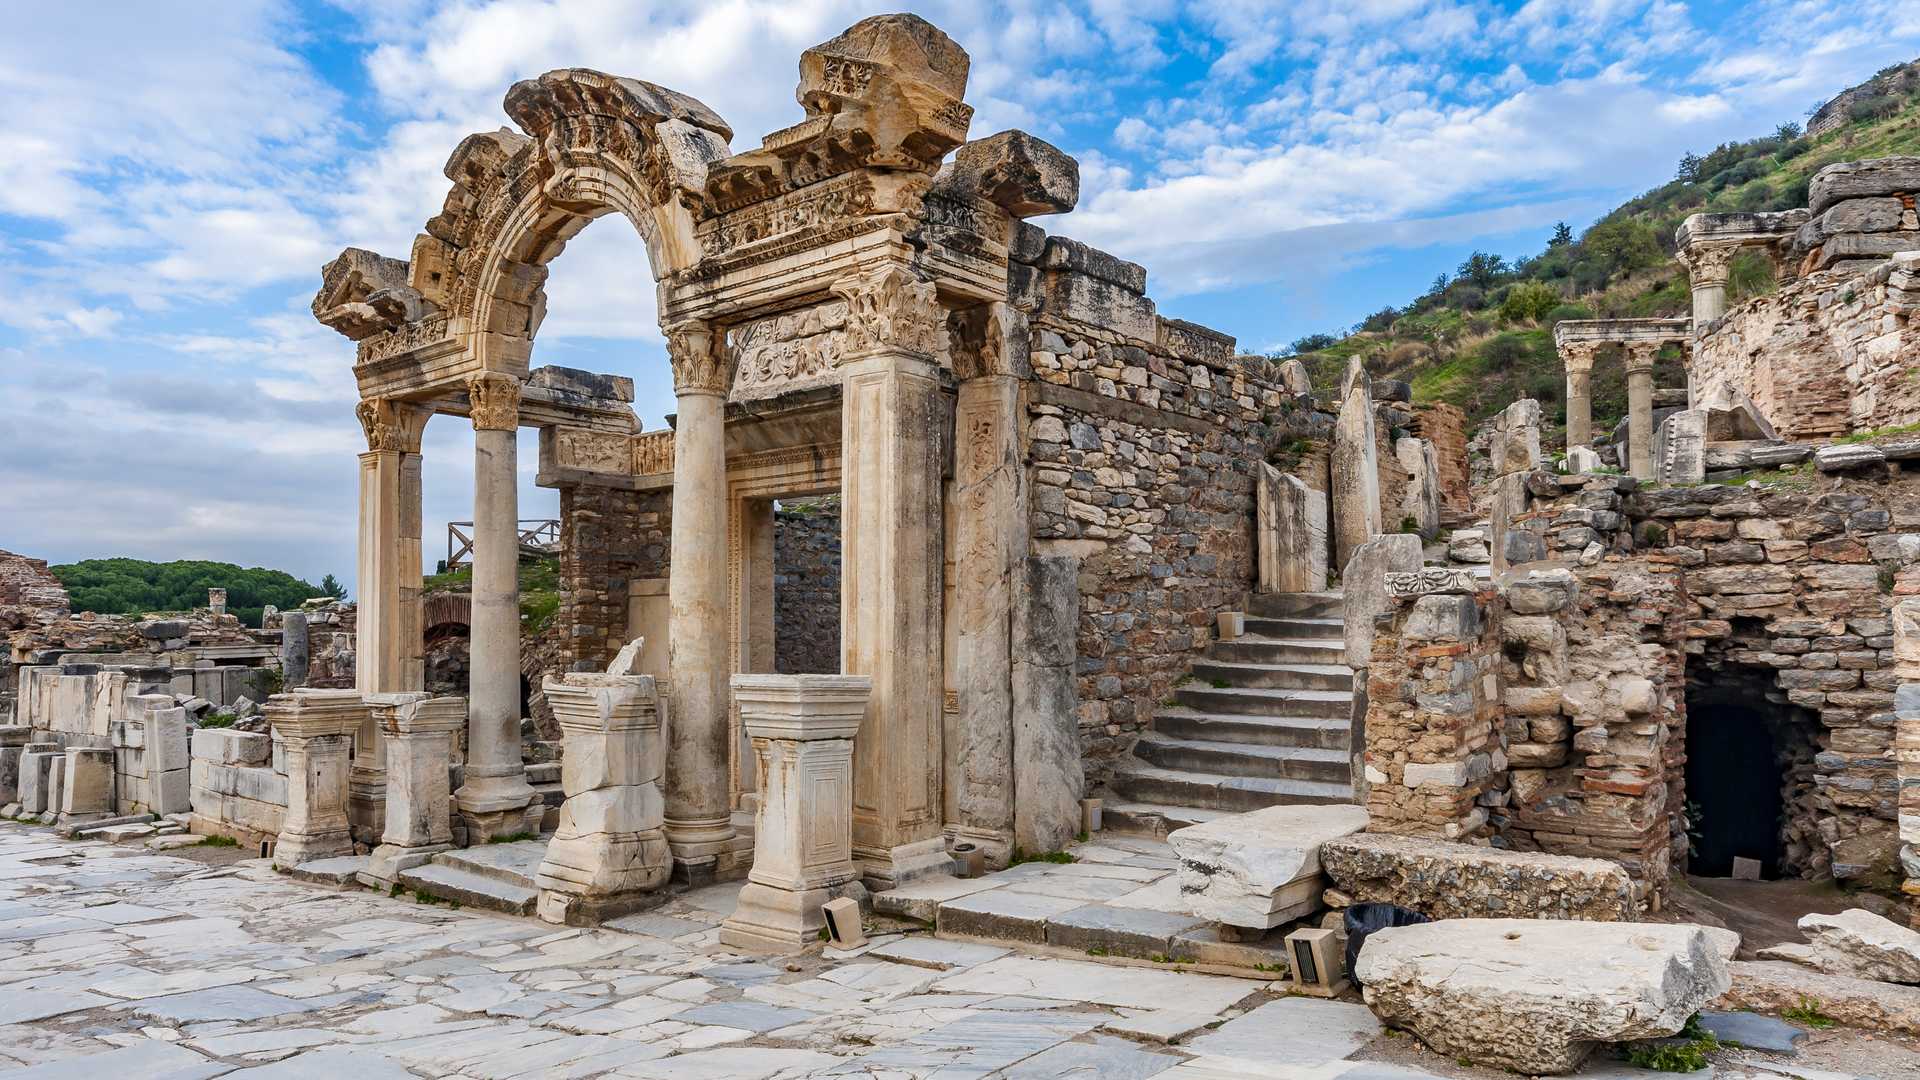 Temple of Hadrian - Ephesus Ancient City